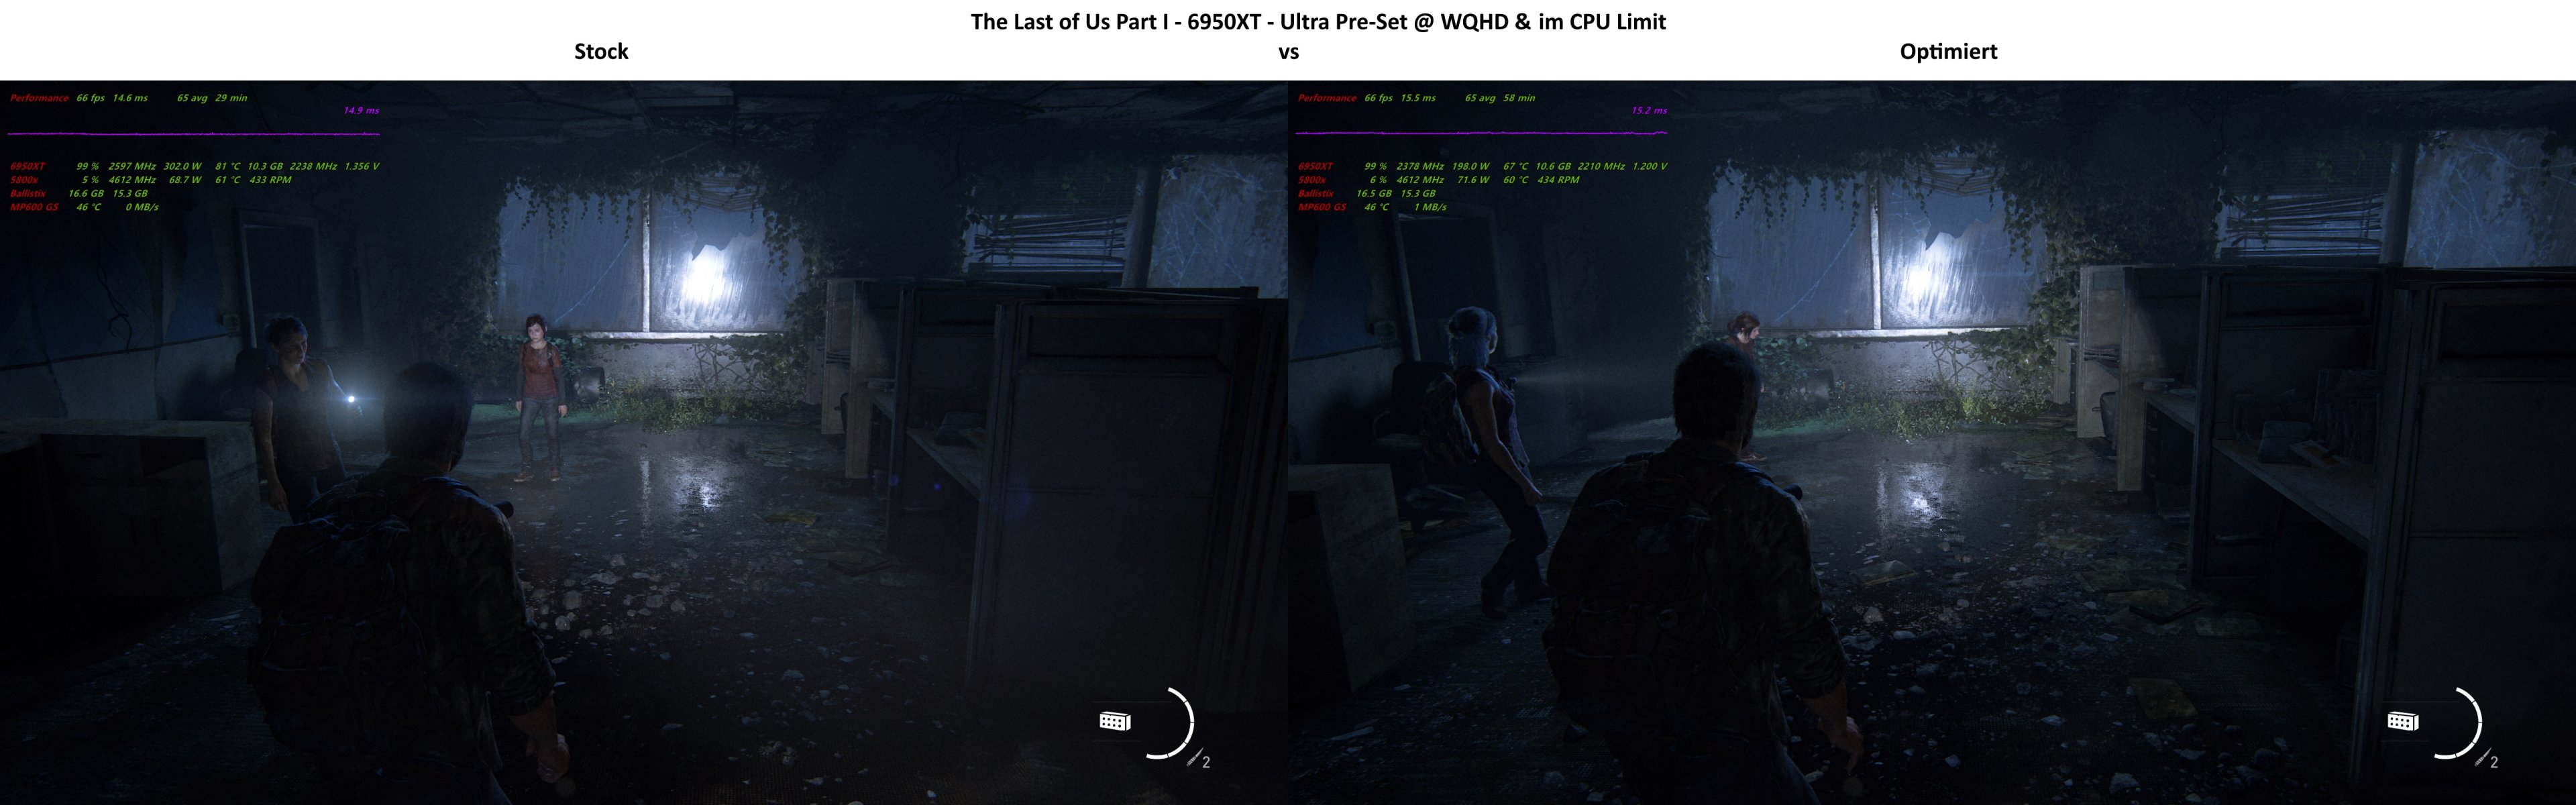 The Last of Us Part I - 6950XT - Ultra Pre-Set @ WQHD & im CPU Limit - Stock vs Optimiert.jpg